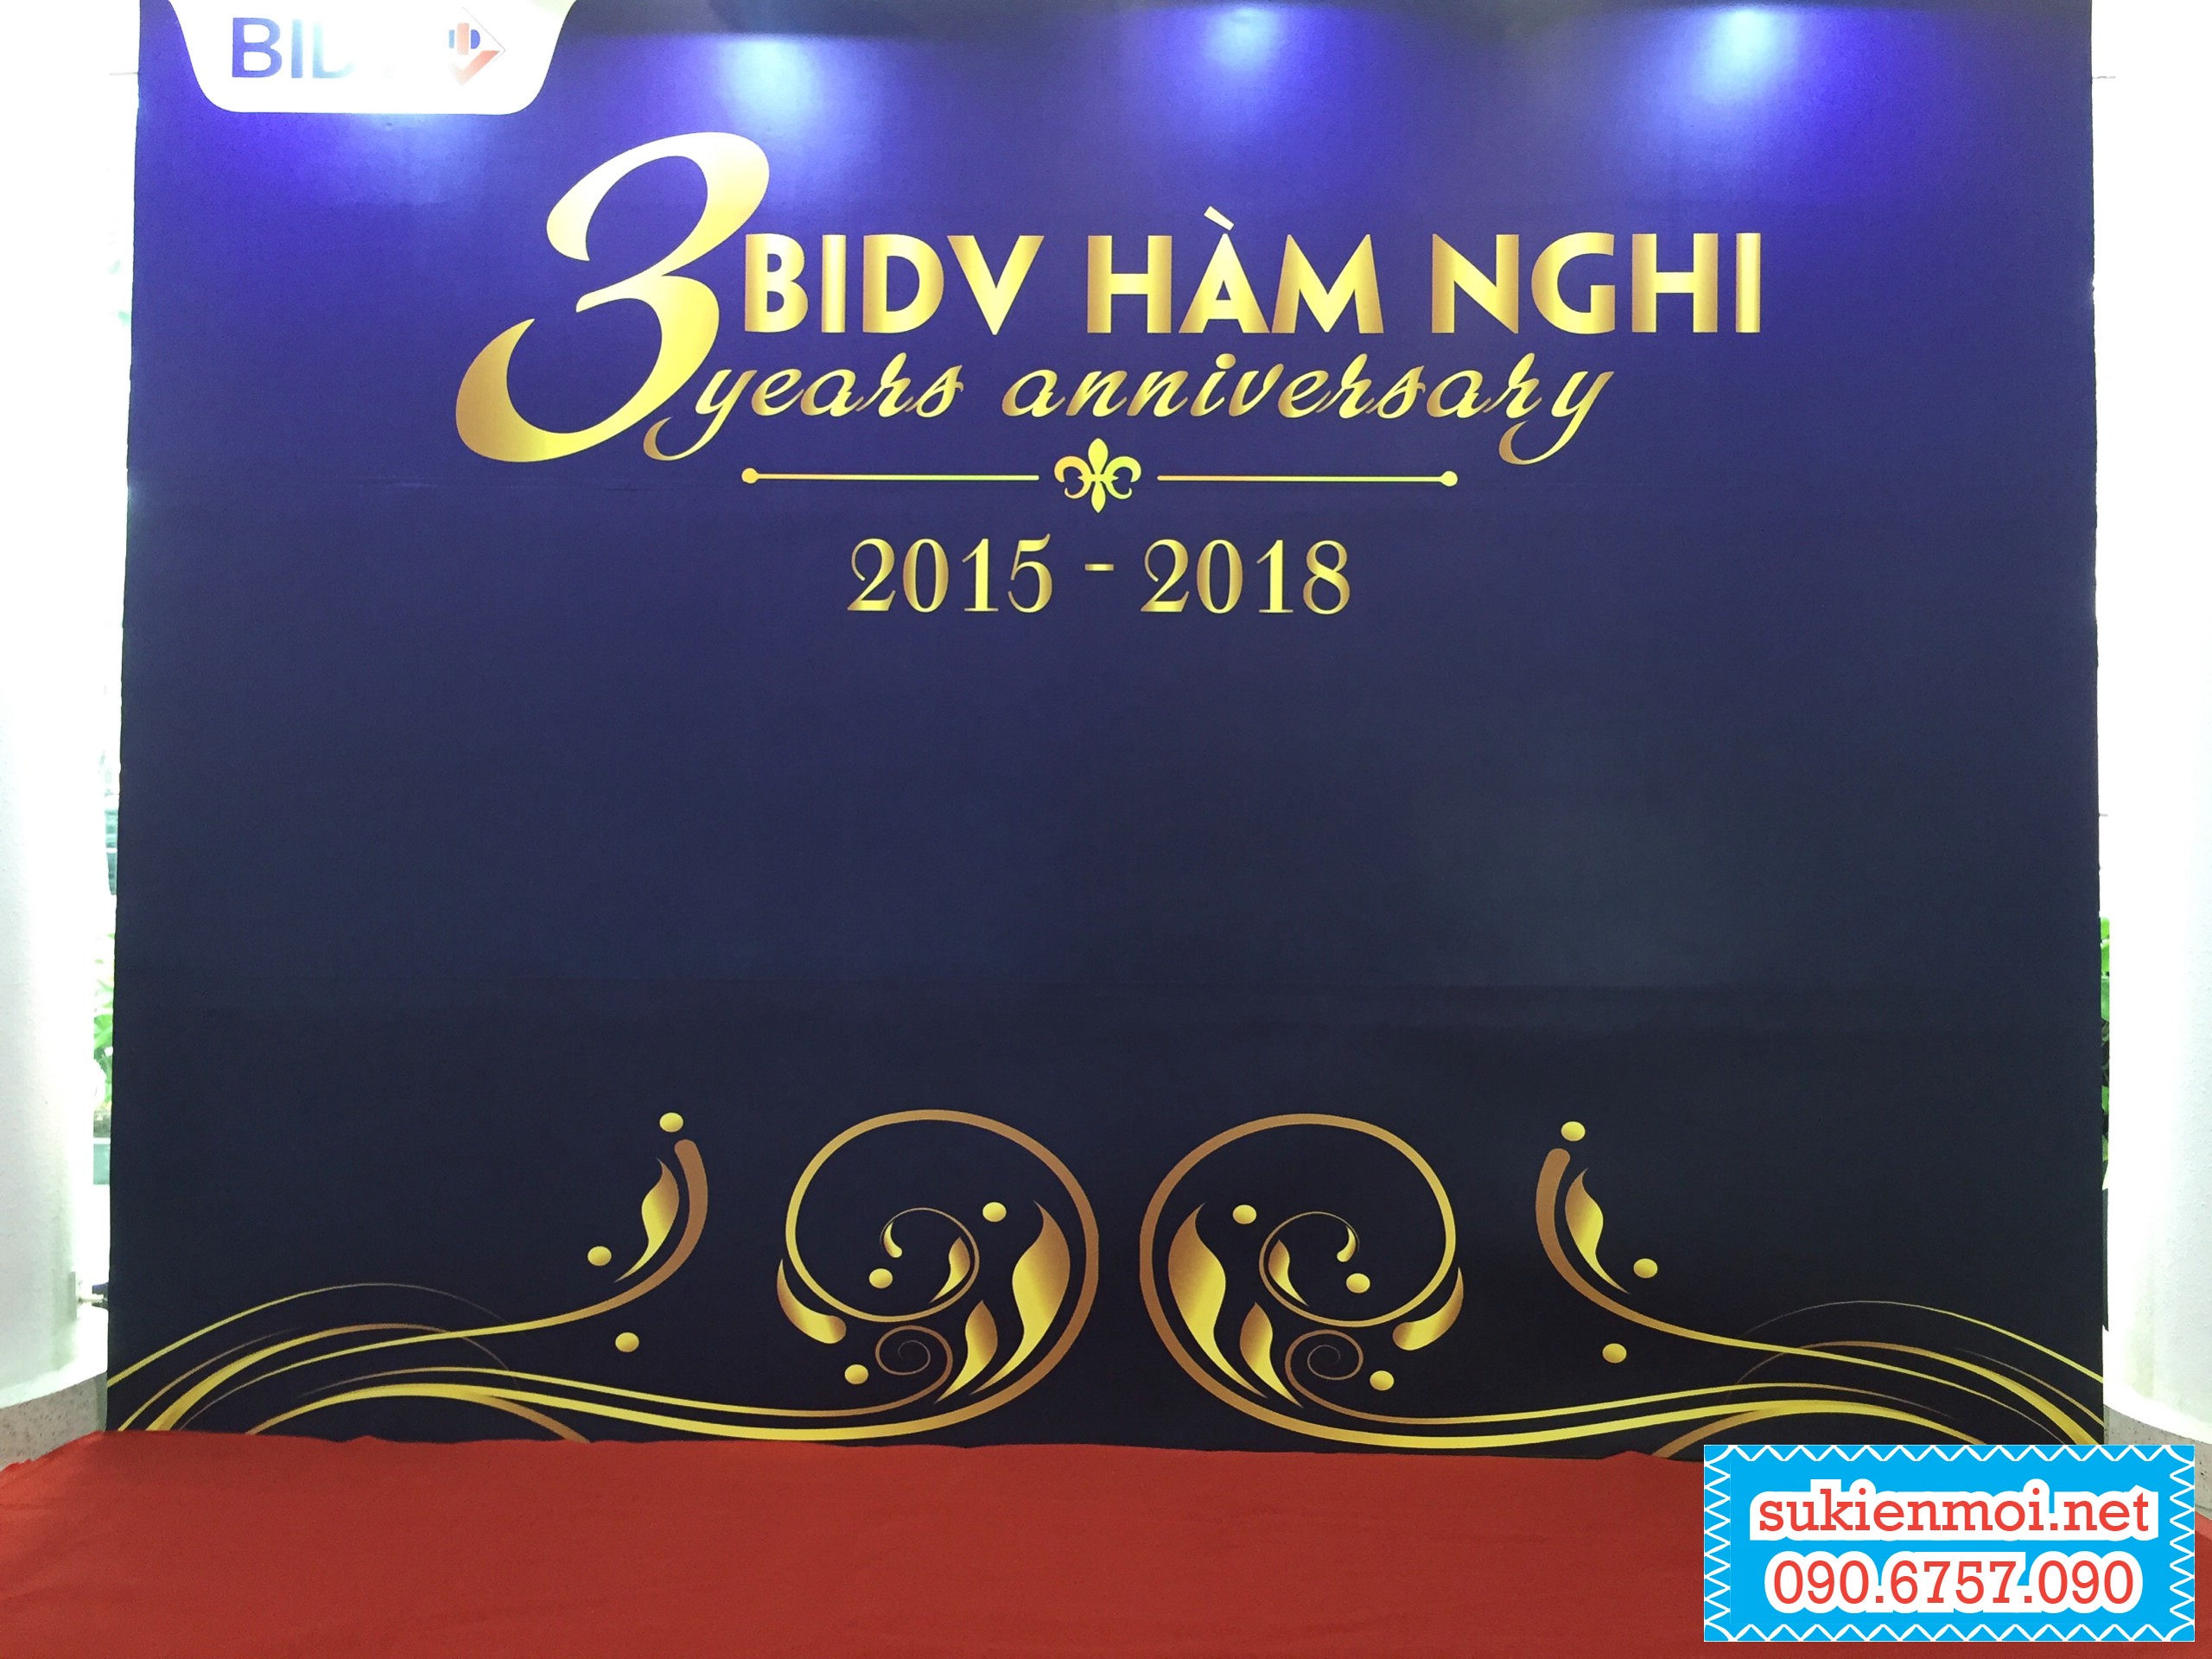 Kỉ niệm 3 năm thành lập BIDV chi nhánh Hàm Nghi